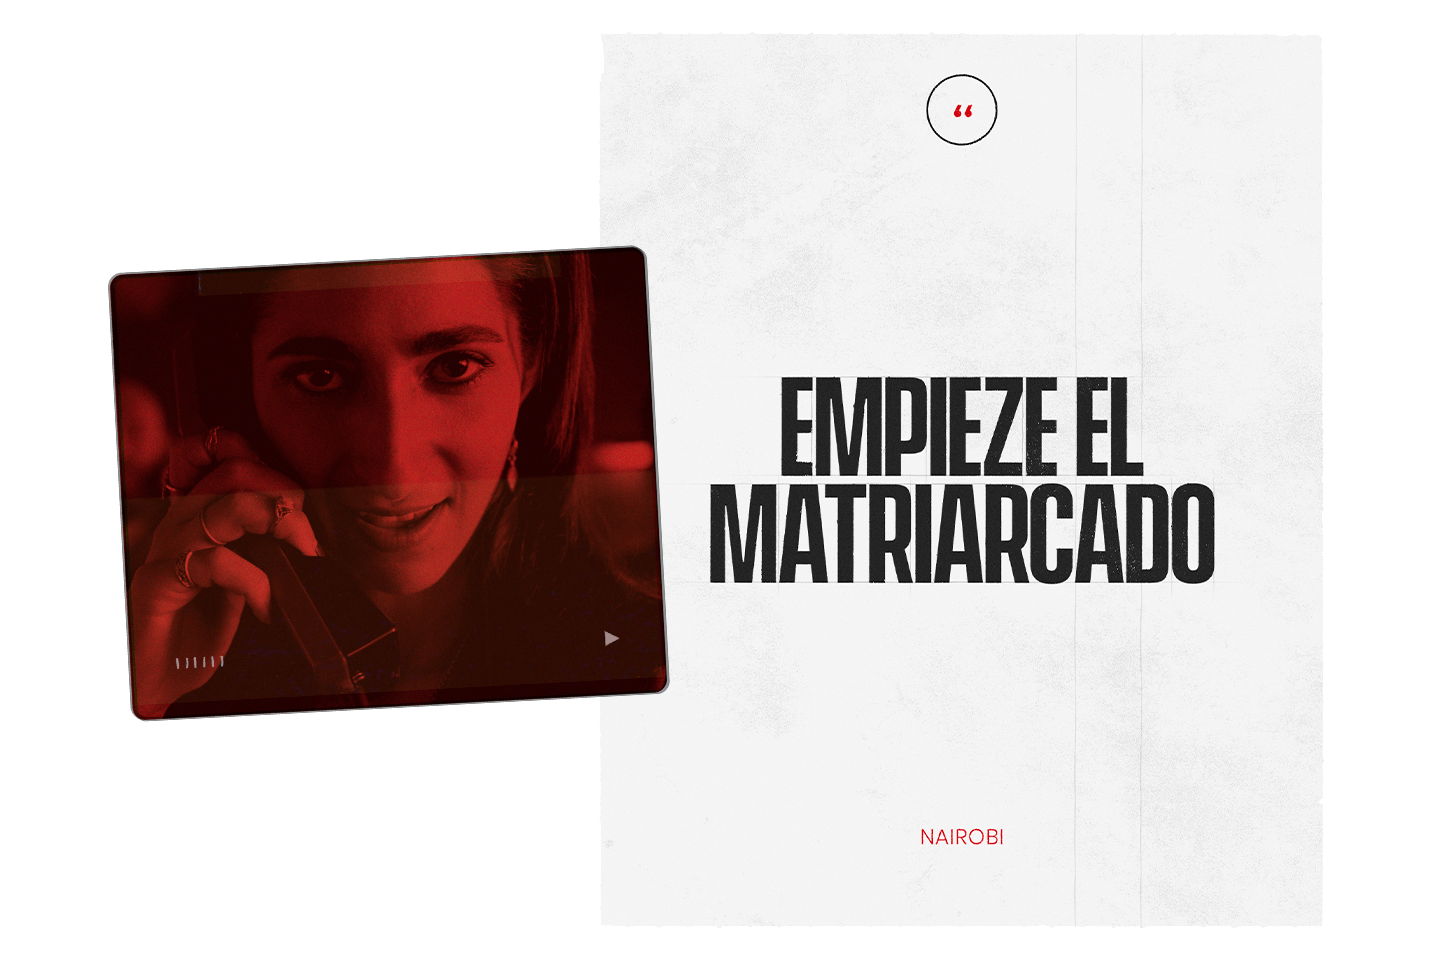 Extract of the website : "Empieze el matriarcado"